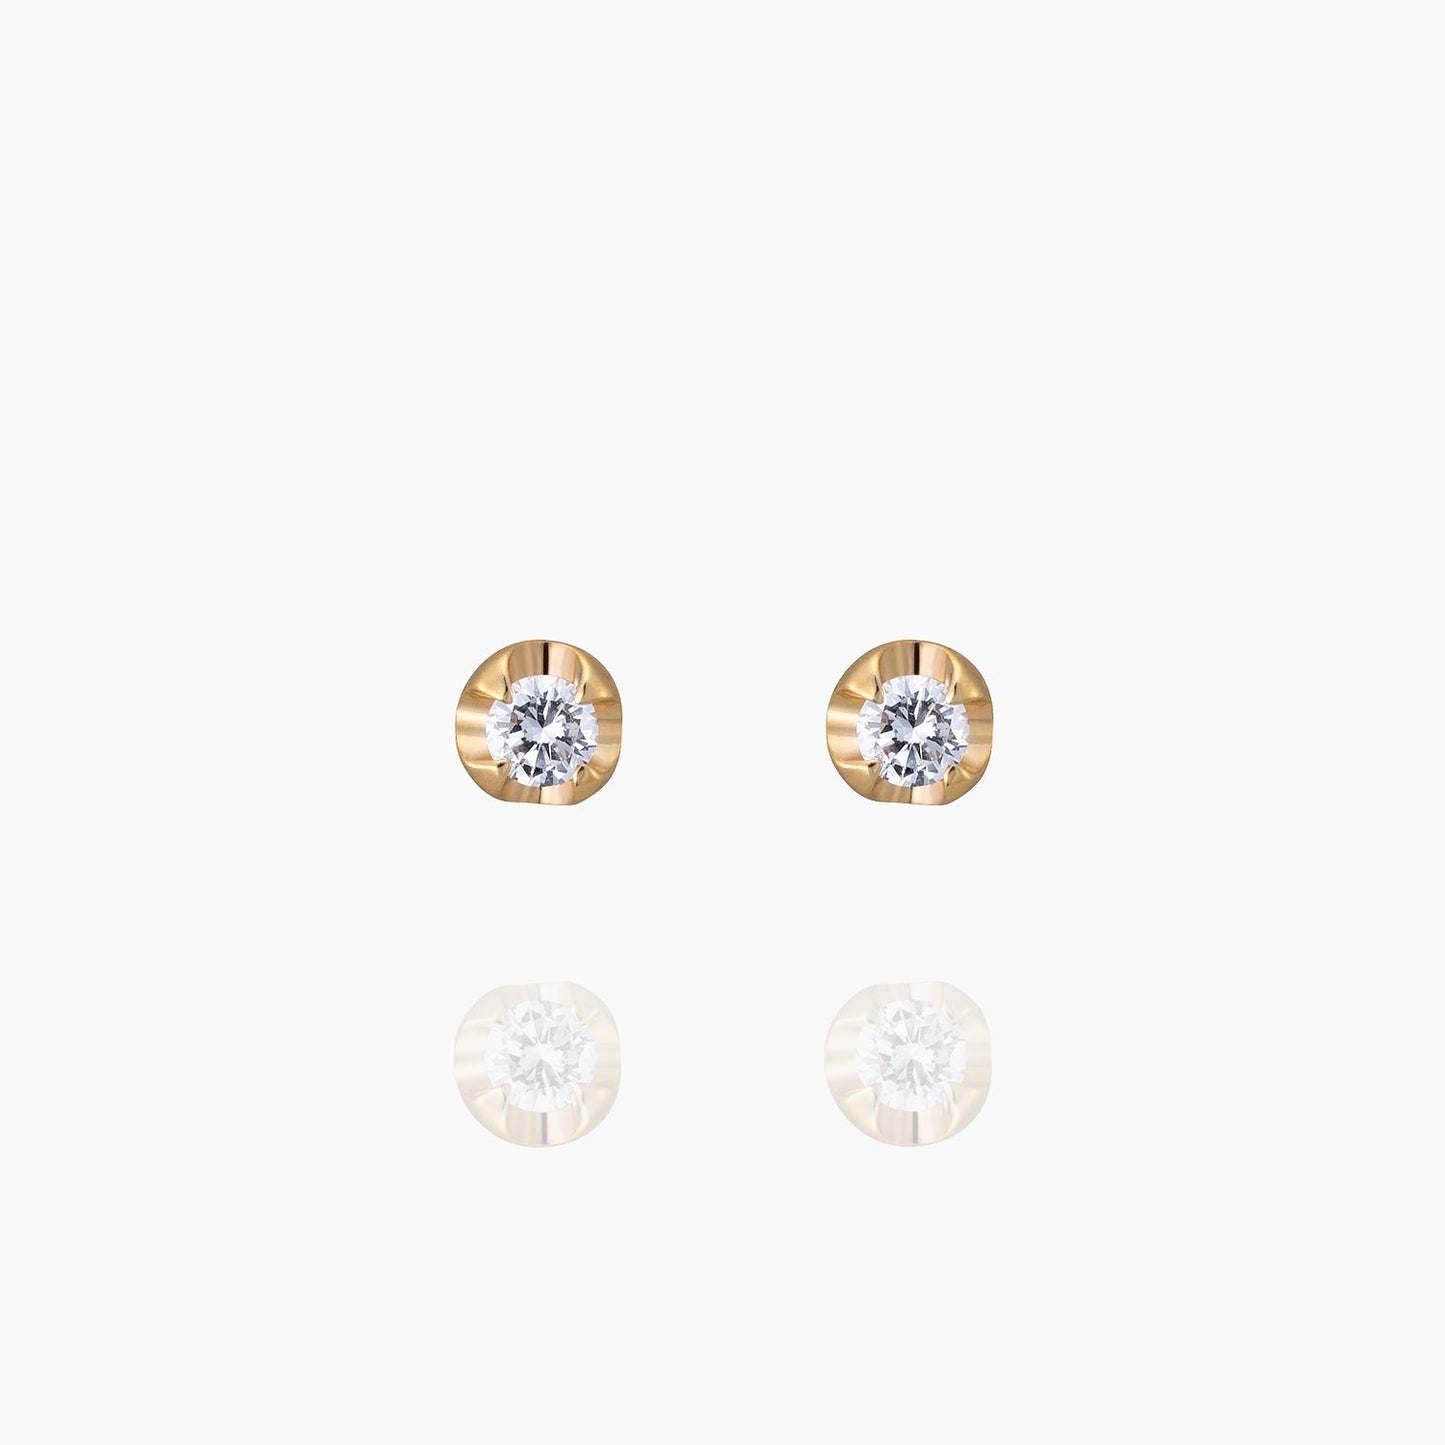 Silas サイラス ピアス 宝石は天然ダイヤモンド 計0.04ct 素材はK10のホワイトゴールド 商品番号MA36 正面